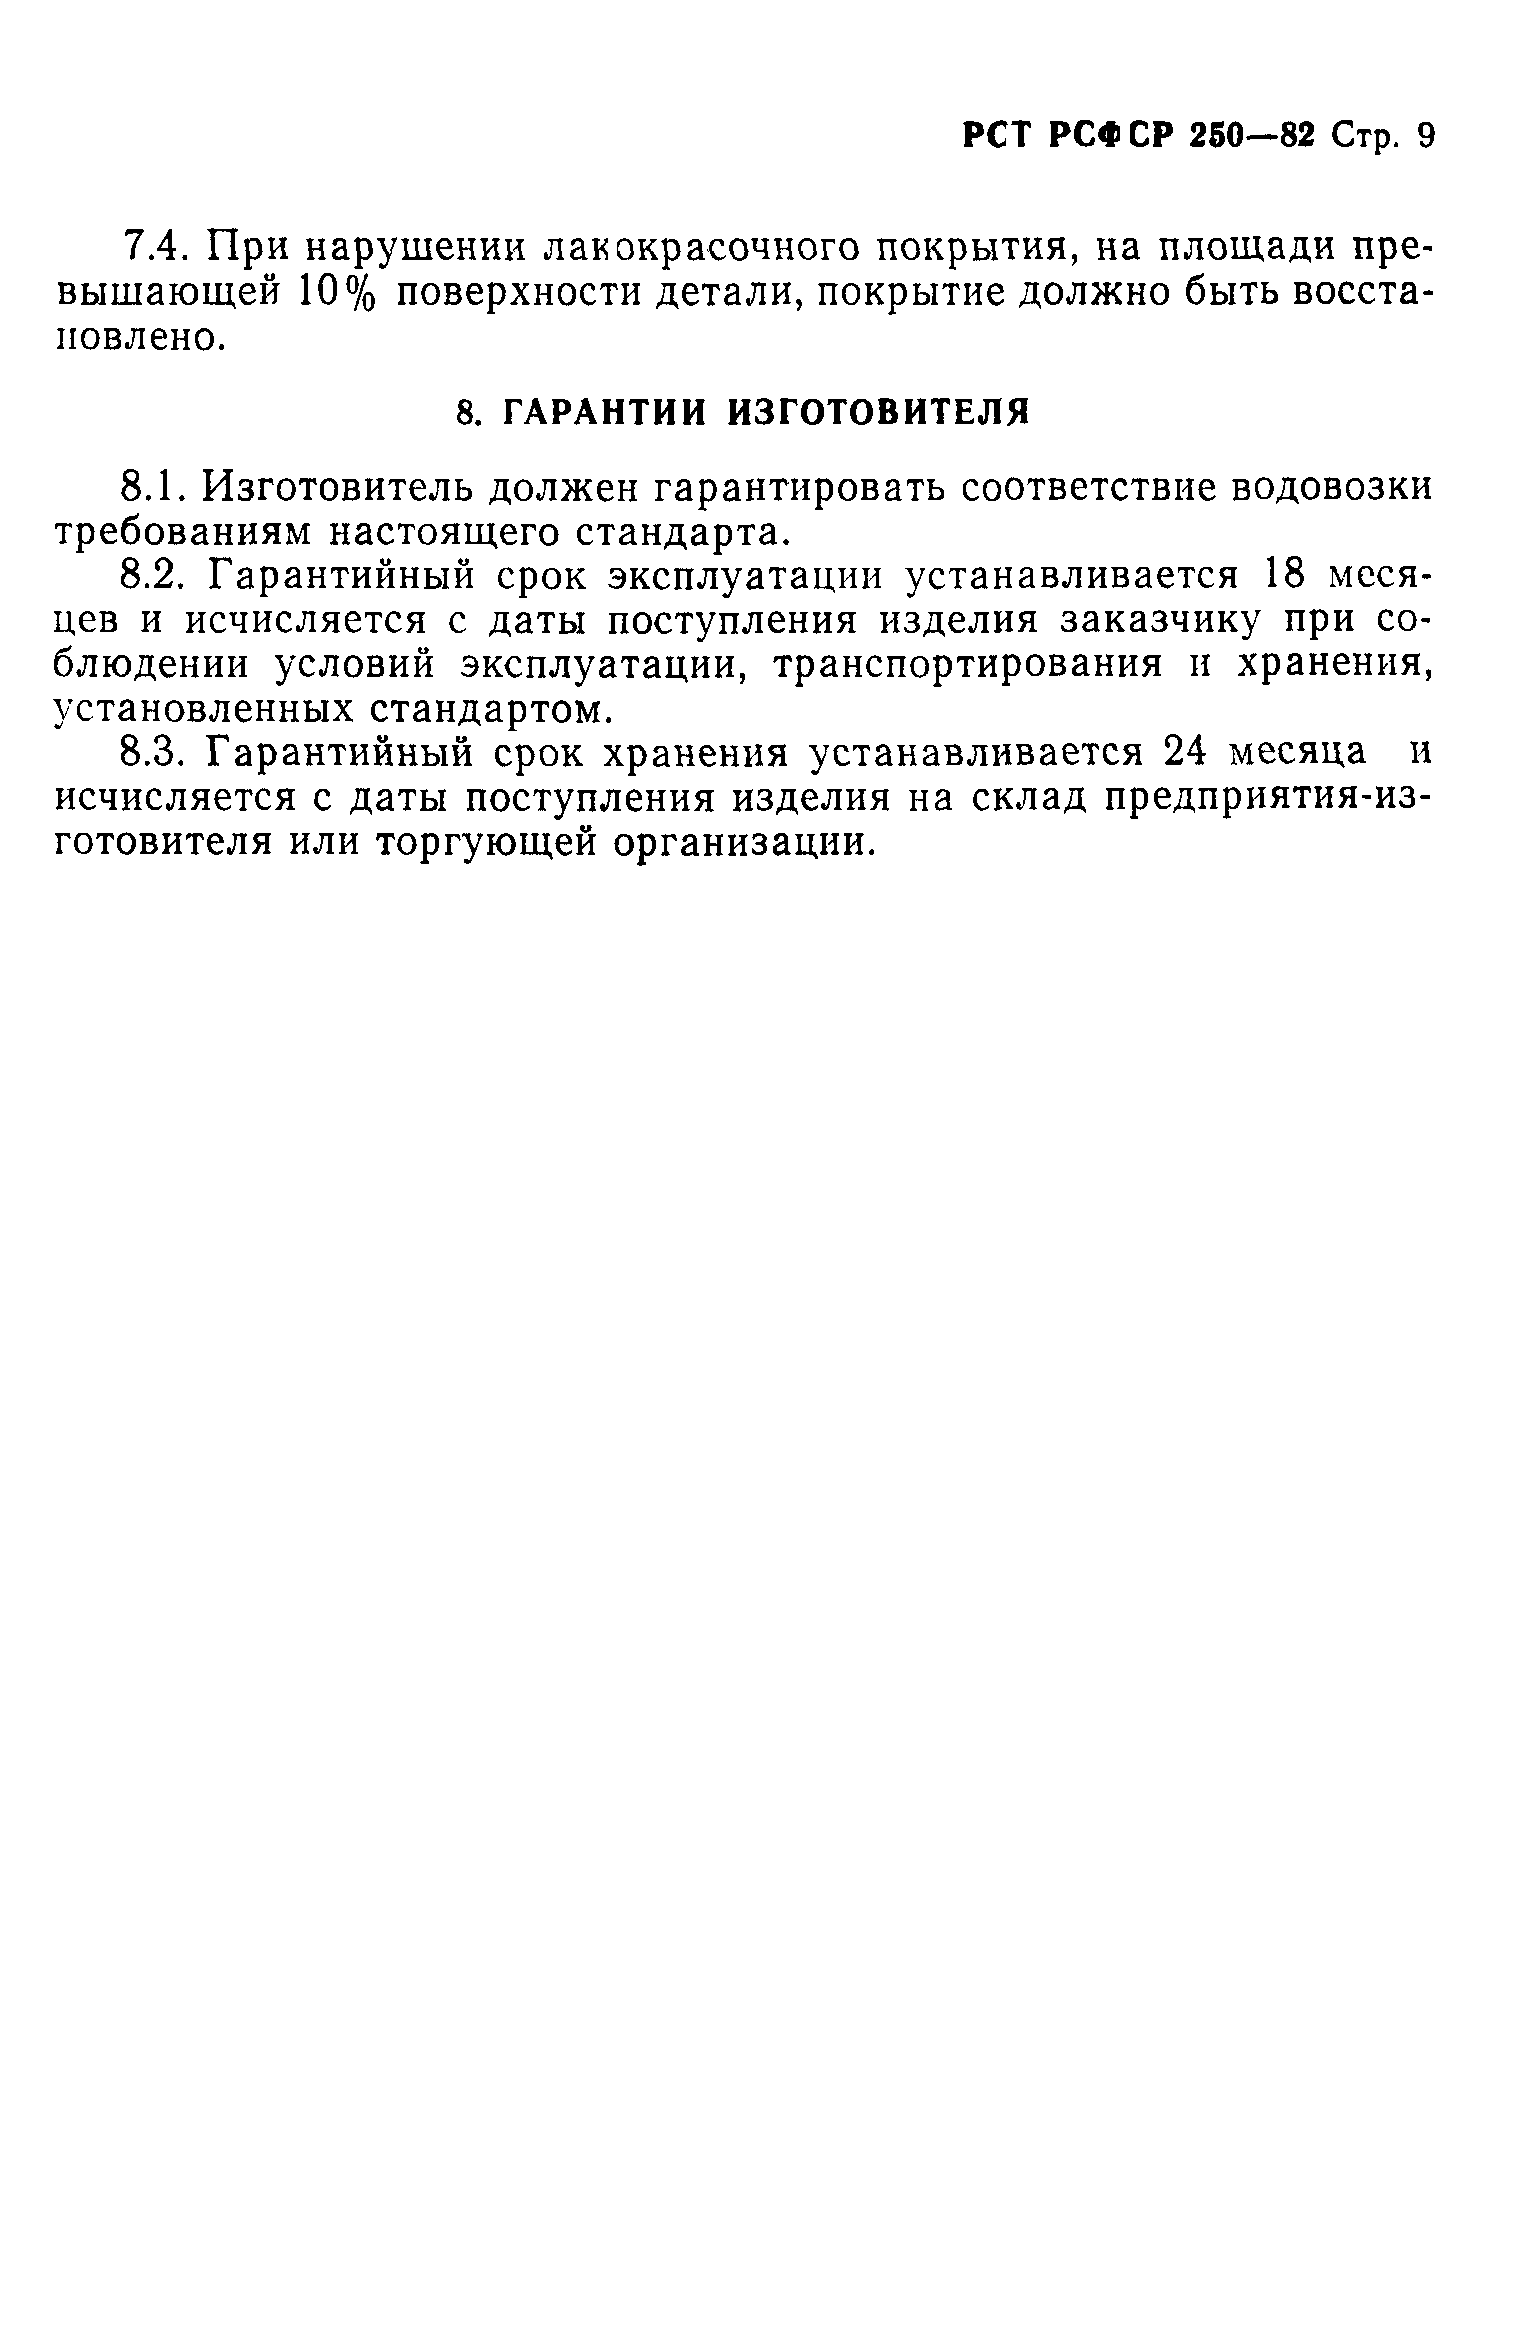 РСТ РСФСР 250-82